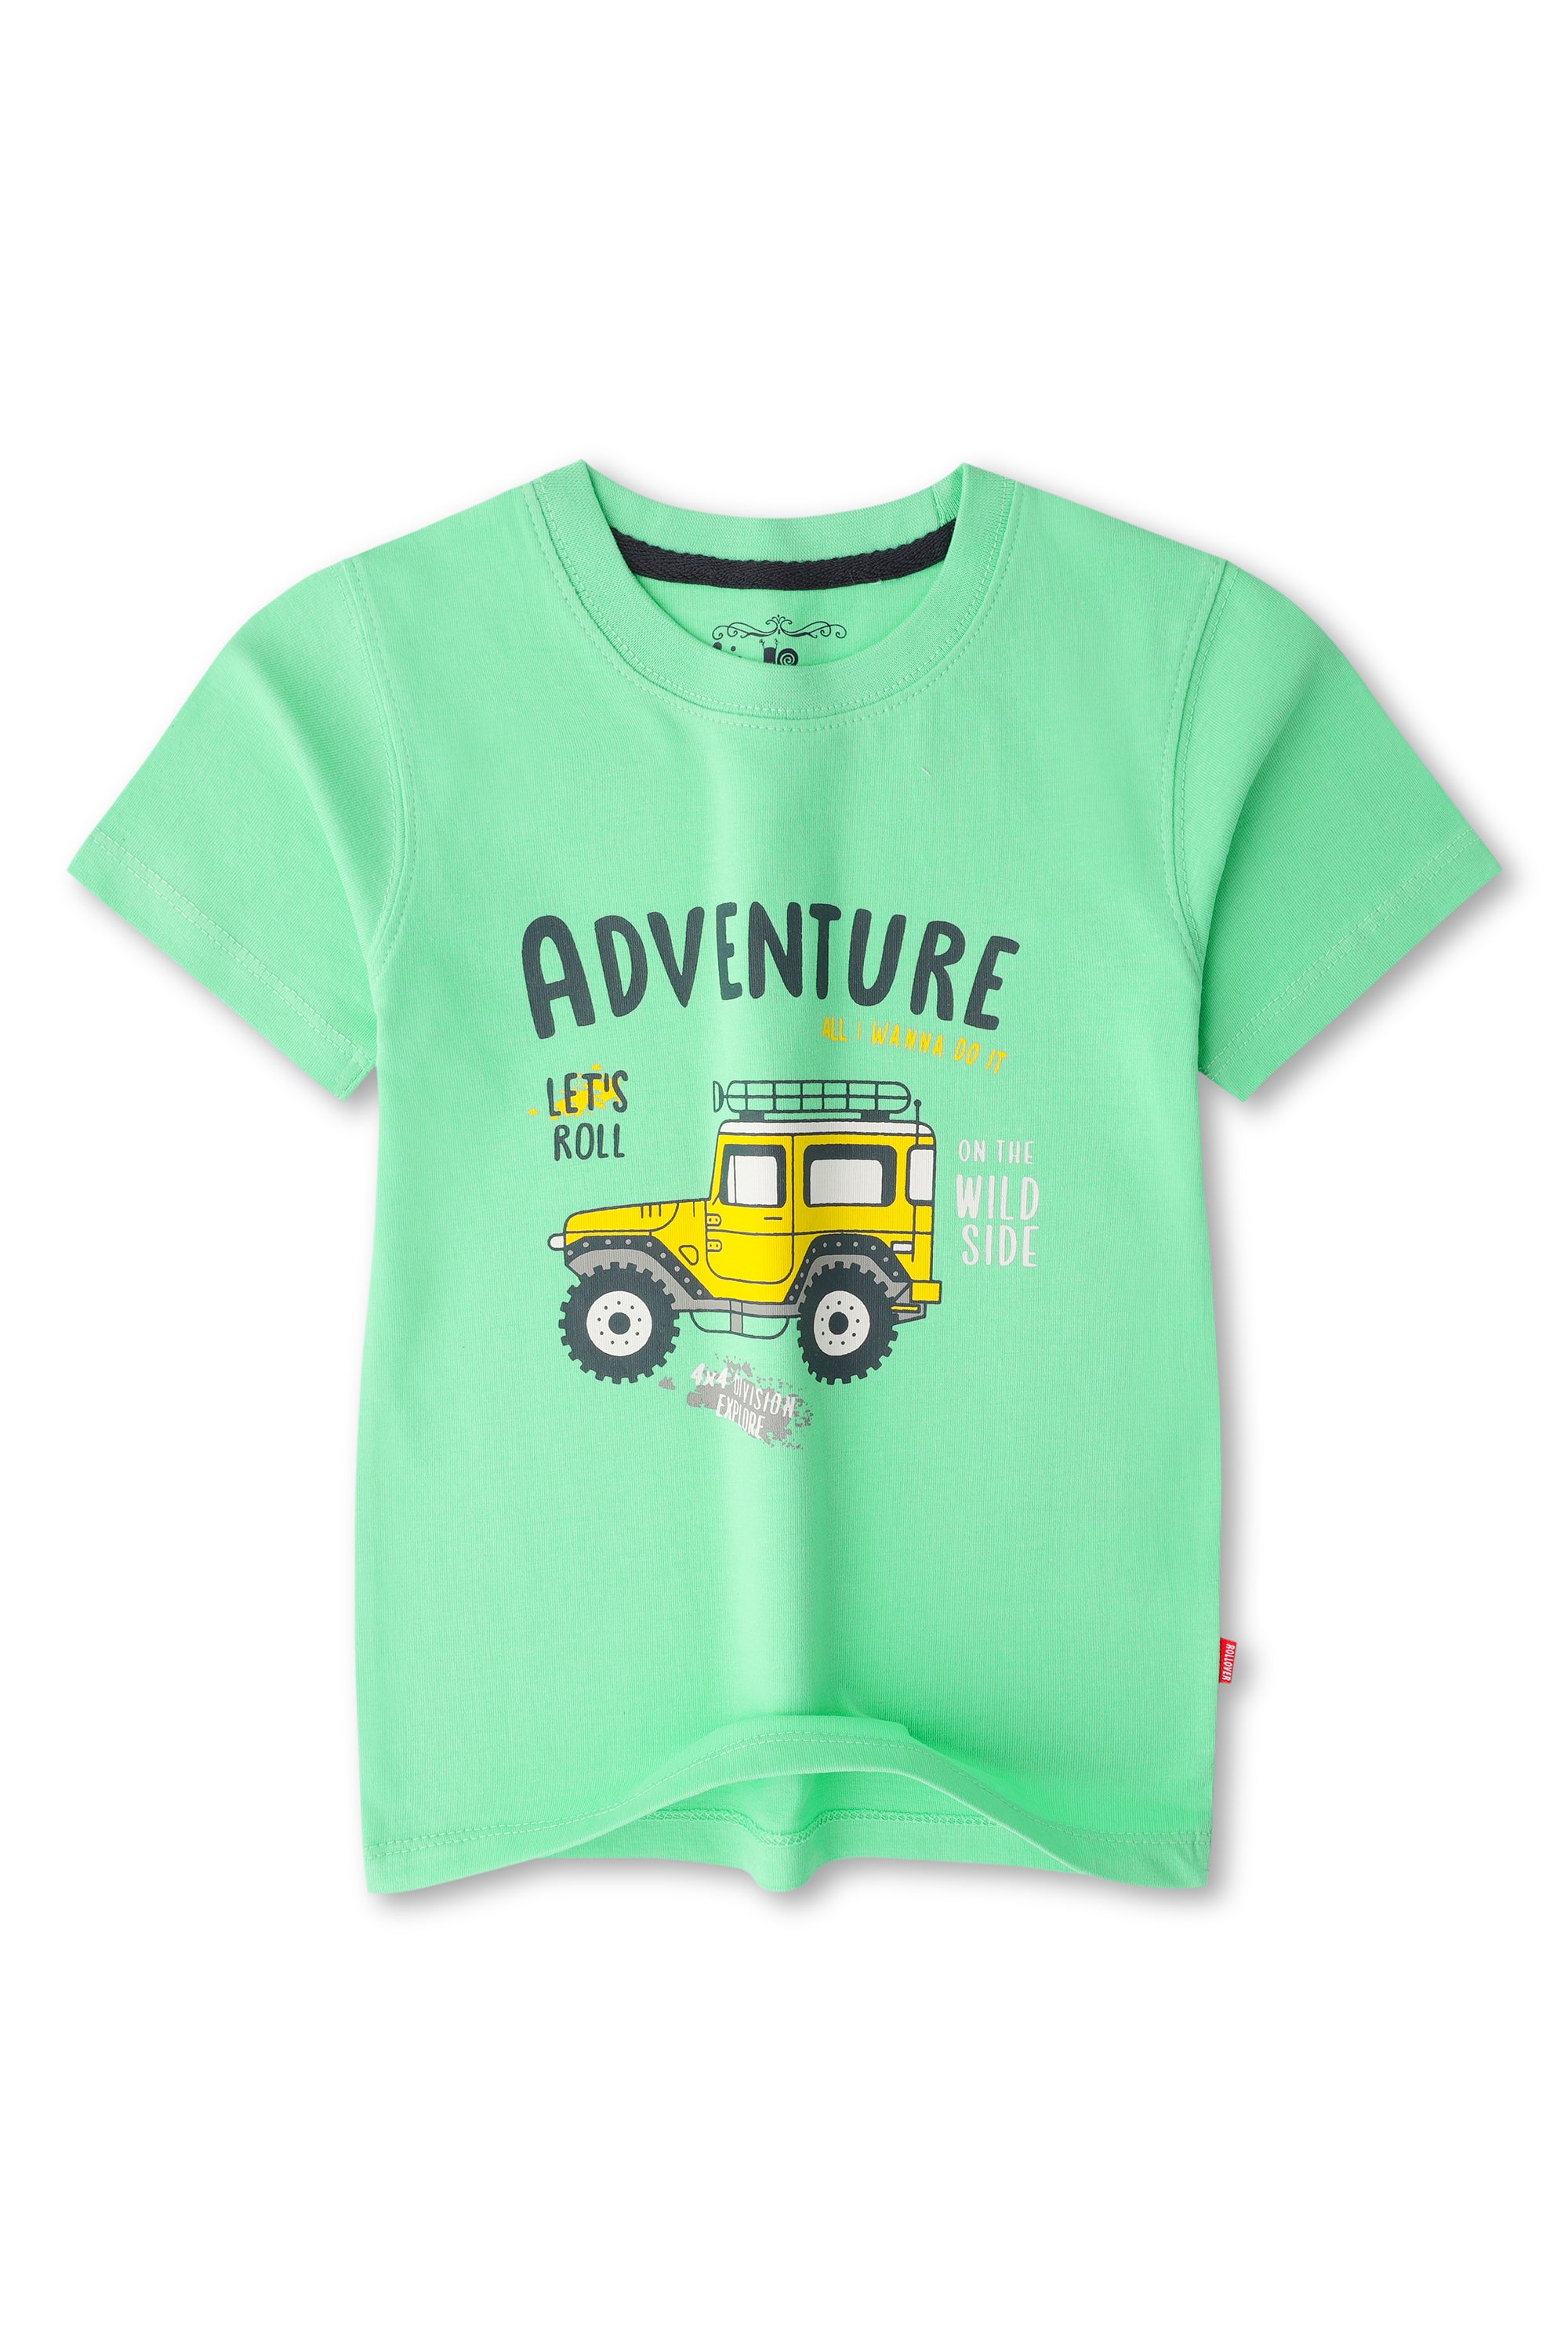 Boys Mint Green Adventure T-shirt